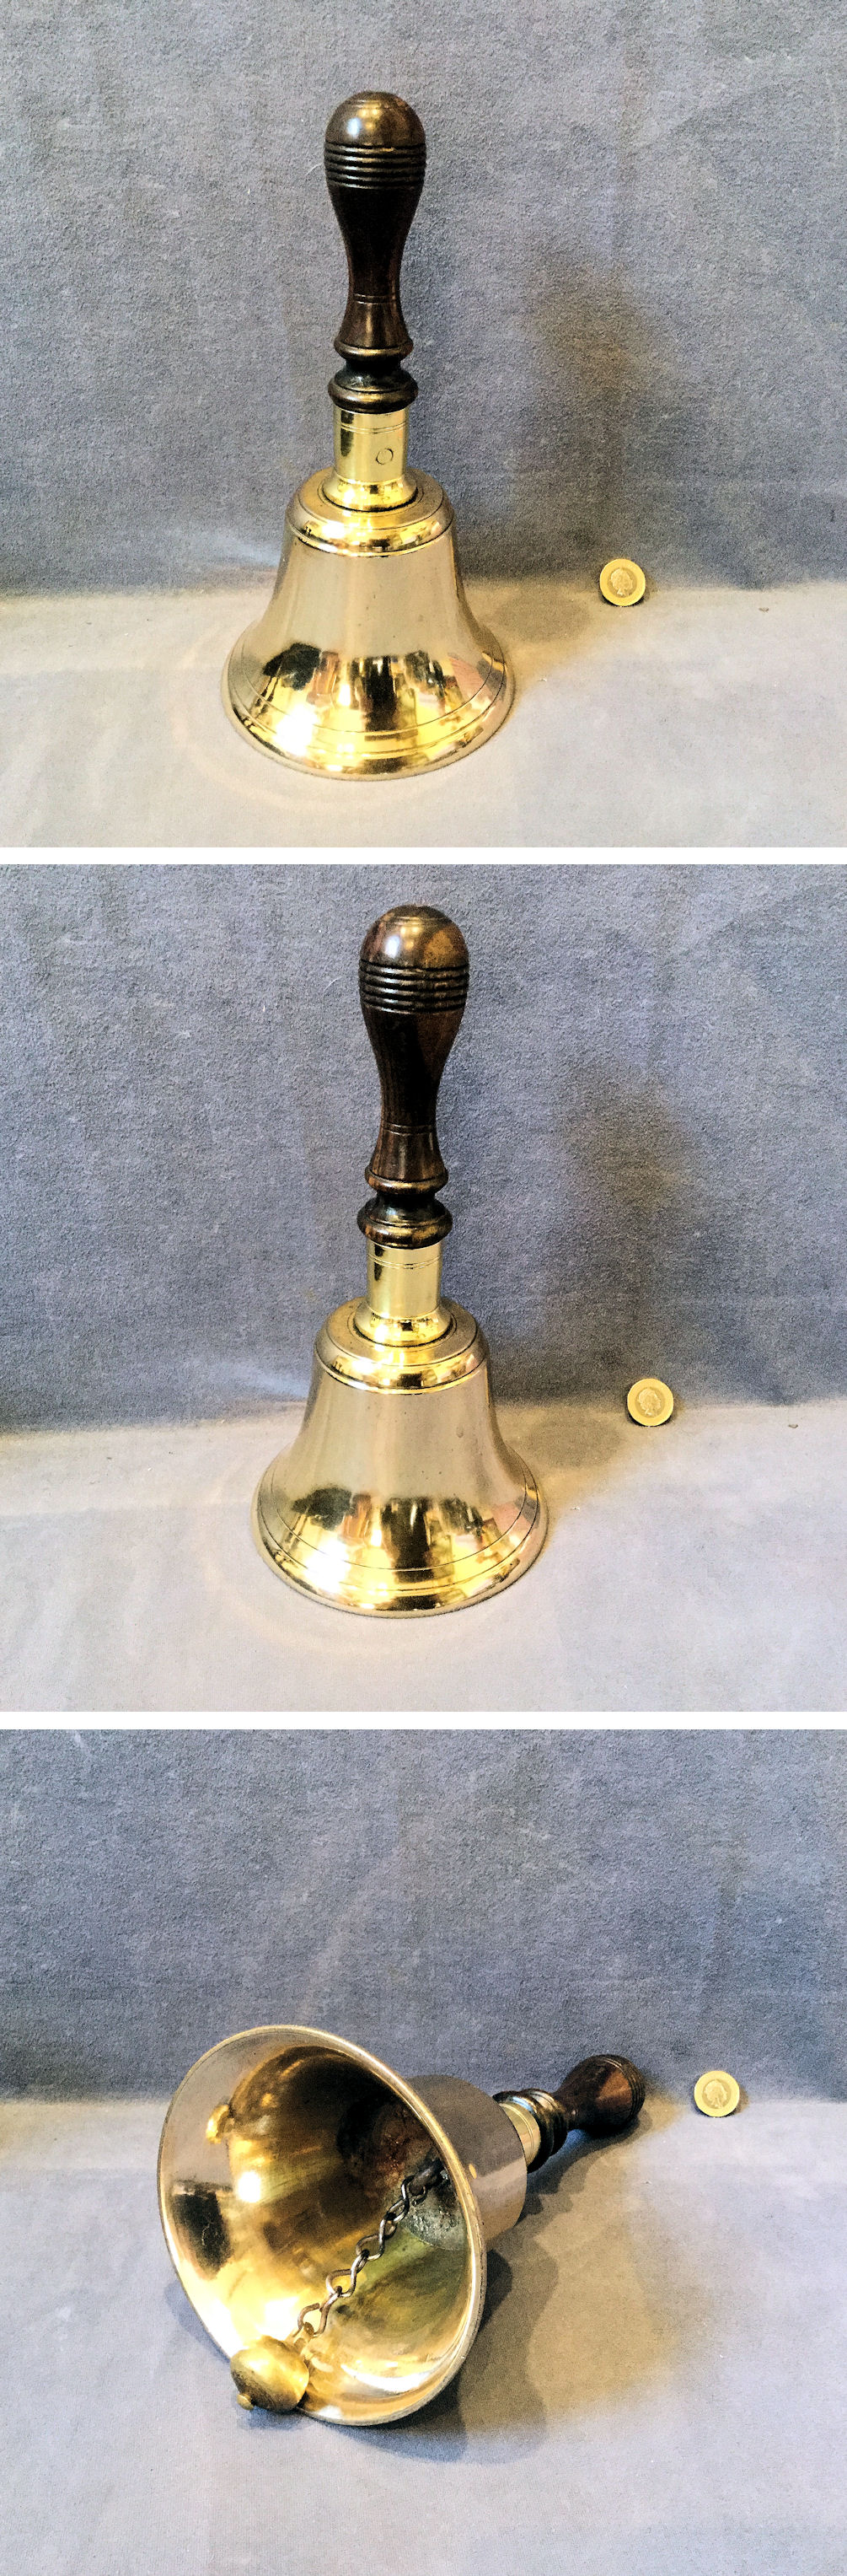 Antique Solid Brass Foley Bell Press Mounted On An Oak Backboard Warwick Rec 